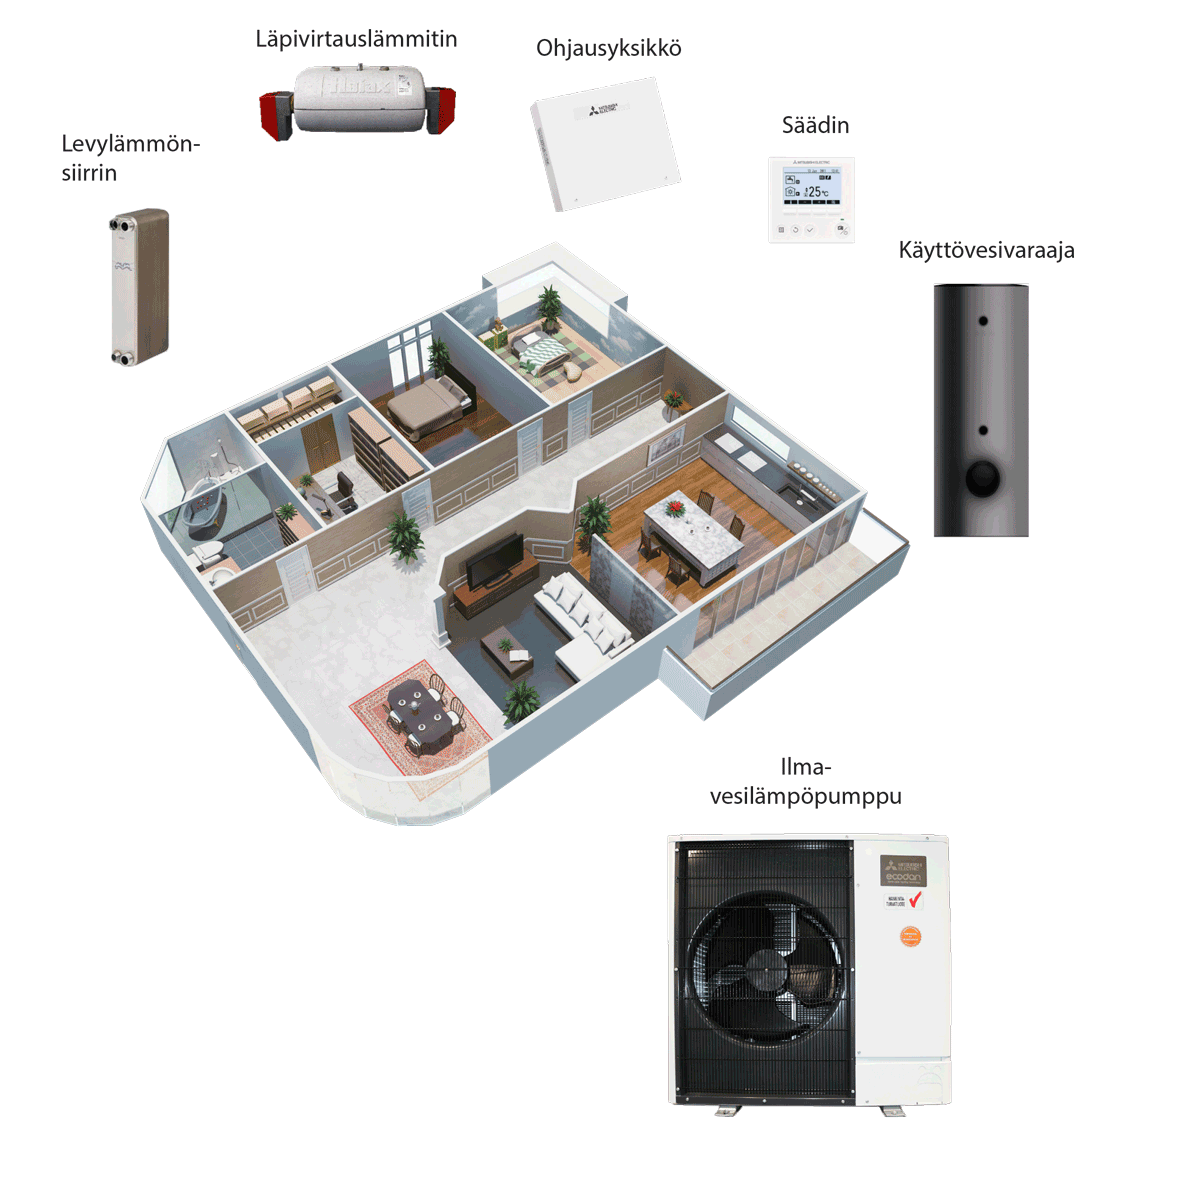 havainnekuva Scanoffice Energypack ilmavesilämpöpumppu-kokonaislämmitysjärjestelmästä, jossa on talon pohjapiirustus sekä eri laitteistoja eri huoneissa.